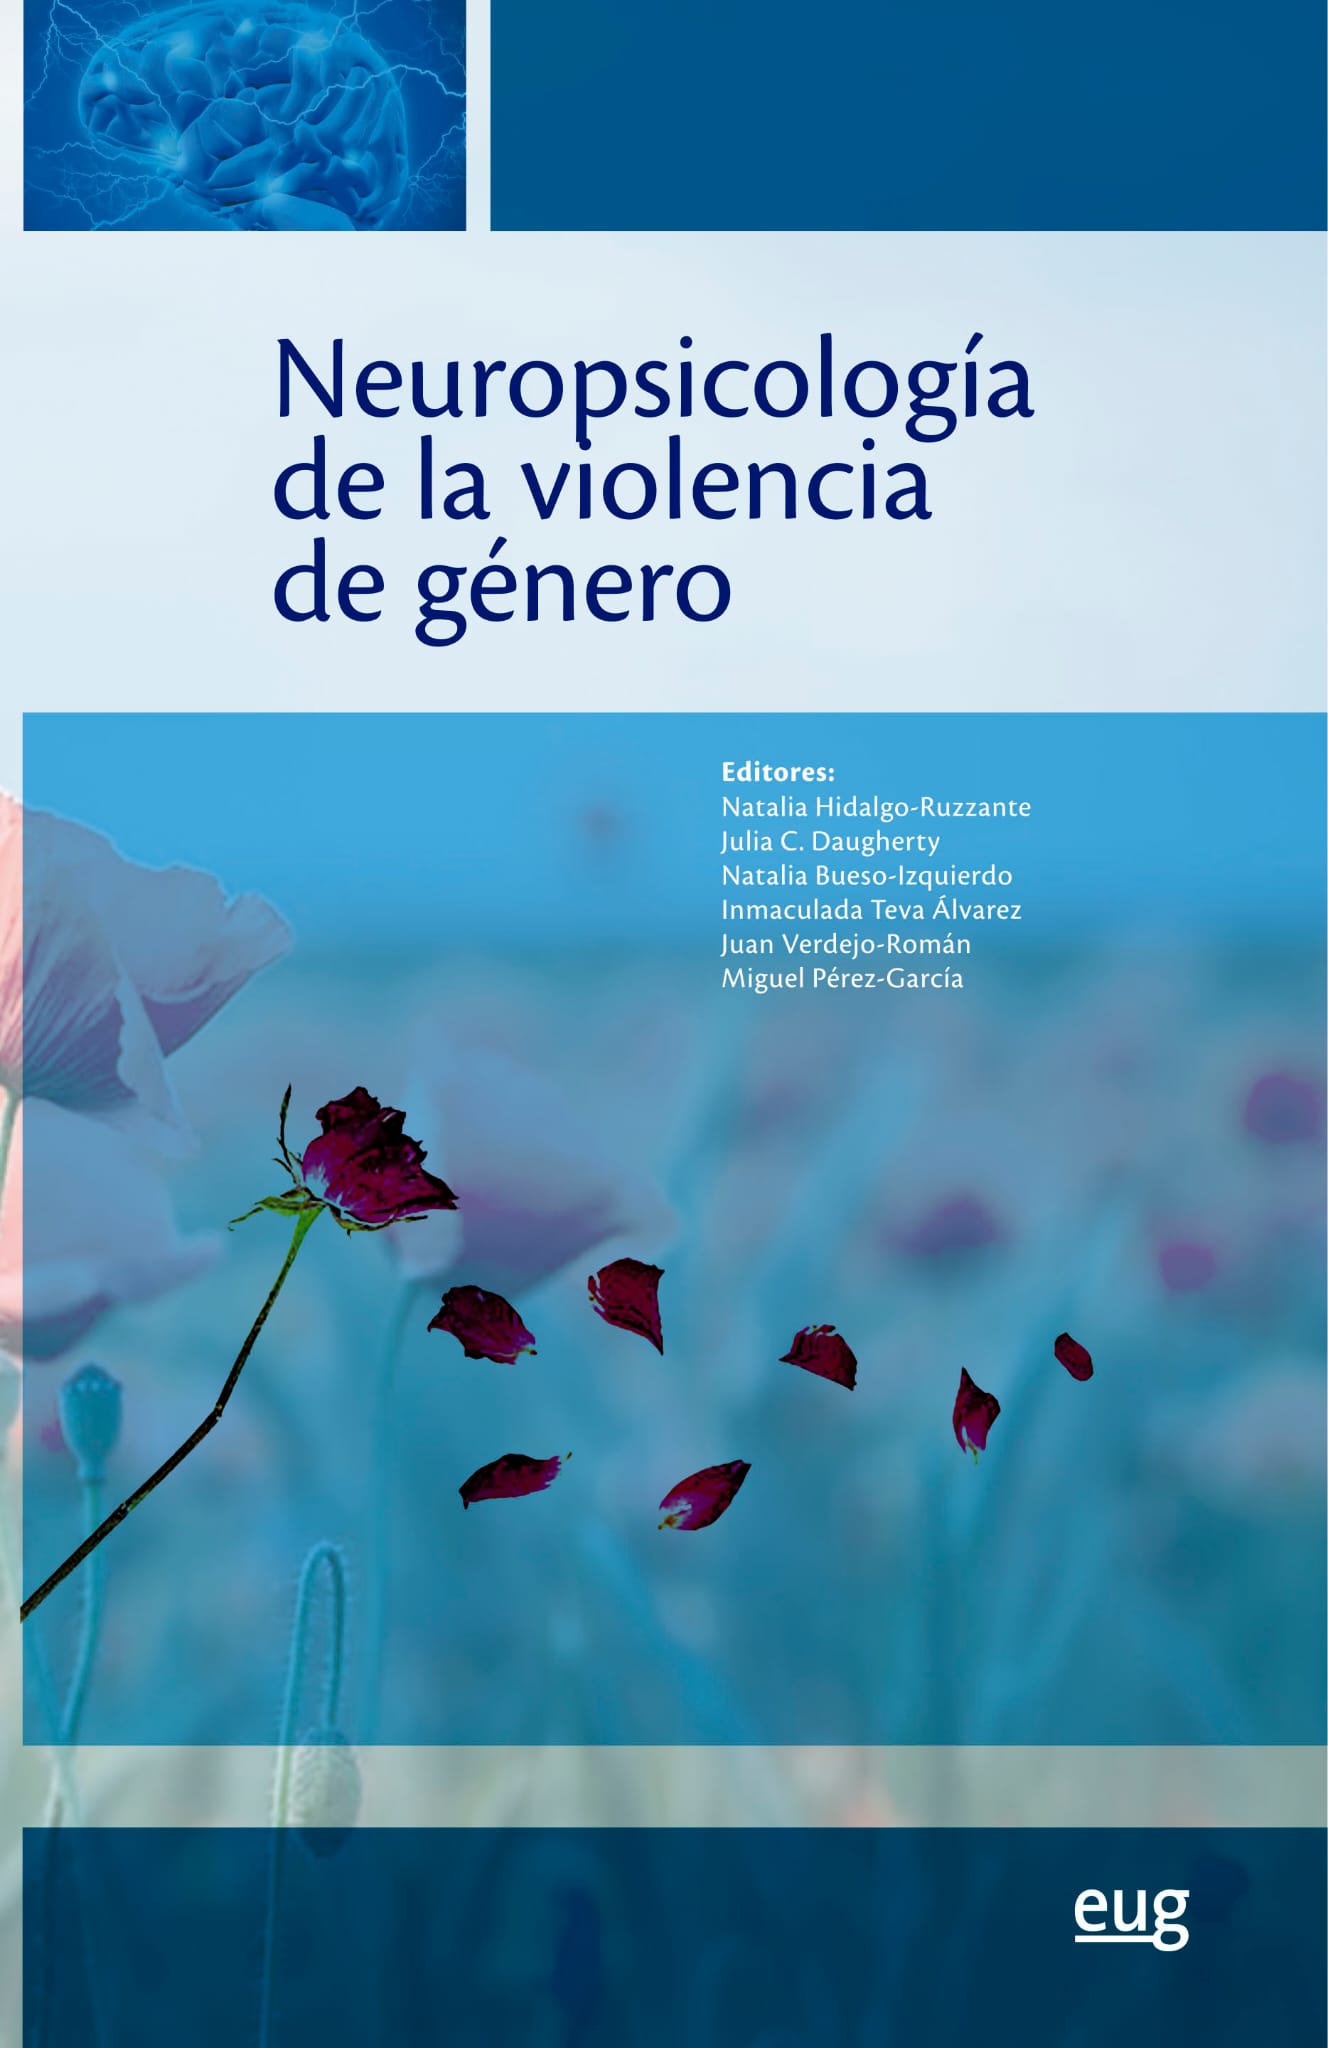 “Neuropsicología de la violencia de género”, Premio Edición Universitaria